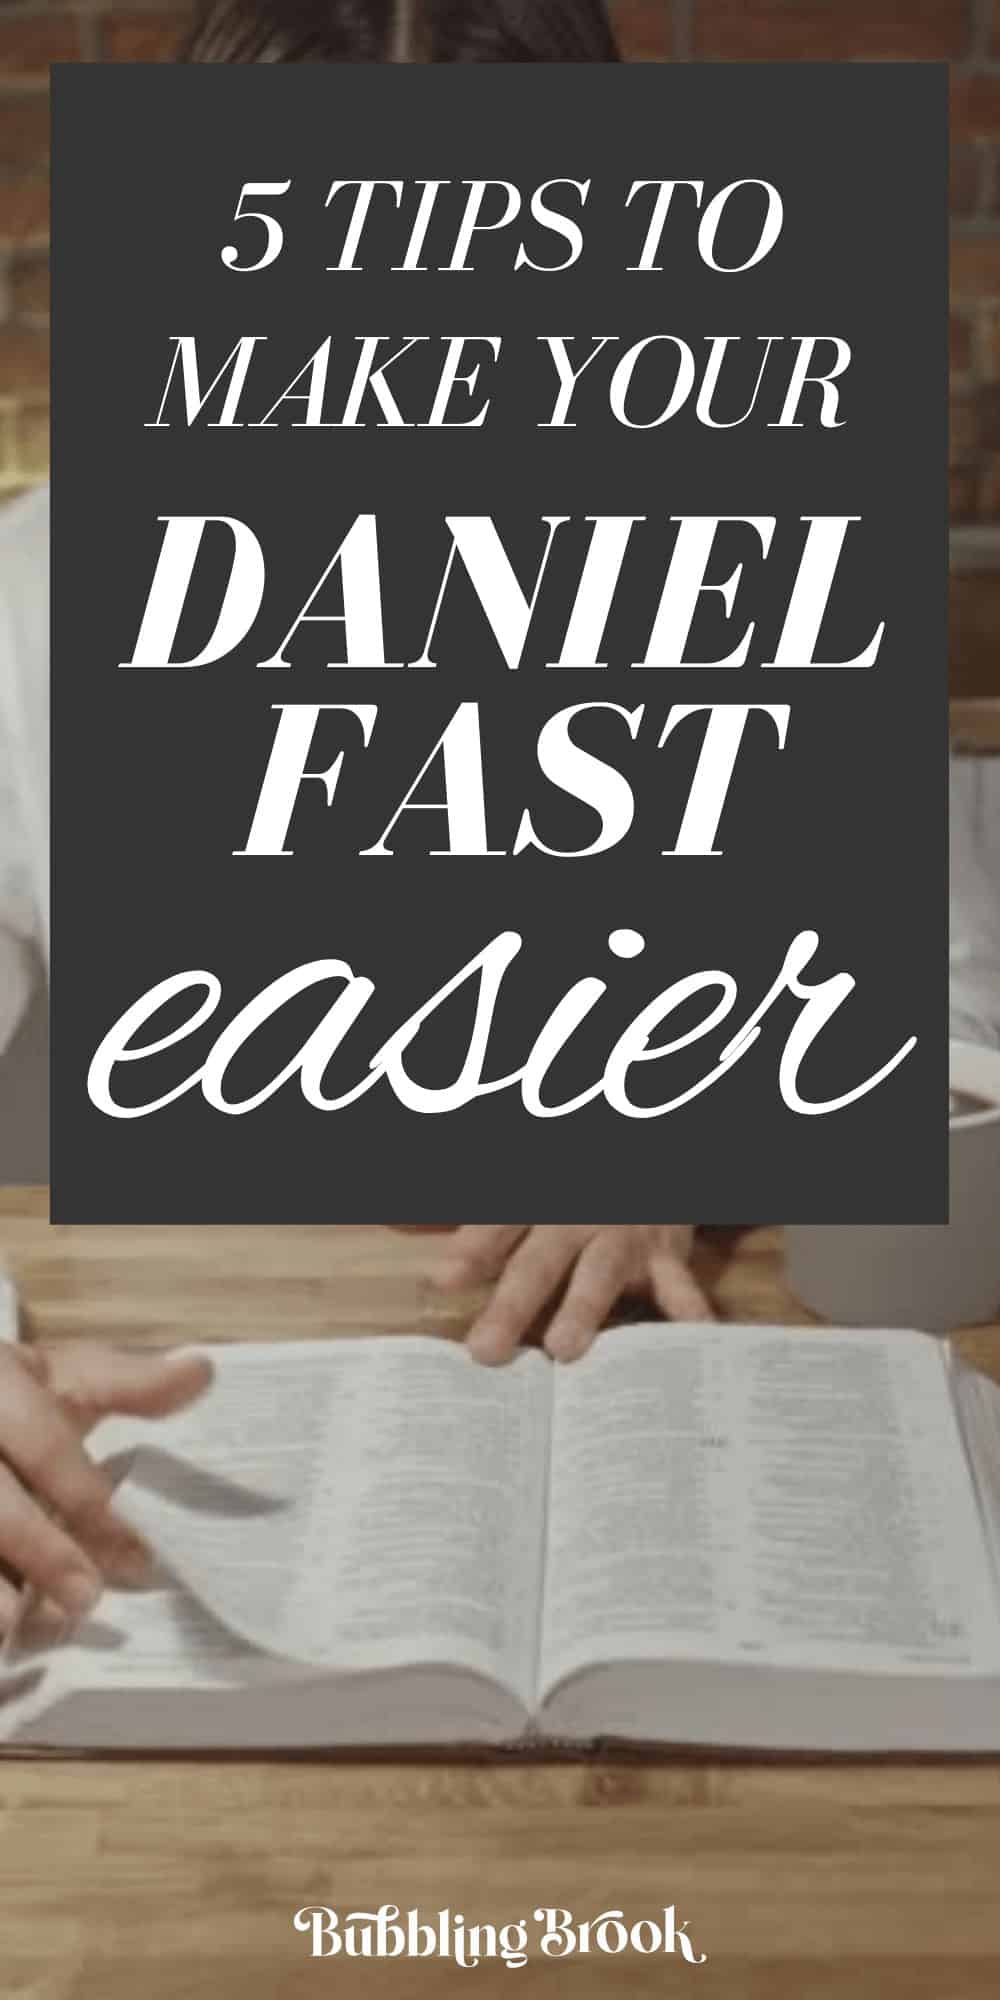 Daniel Fast tips - pin for Pinterest